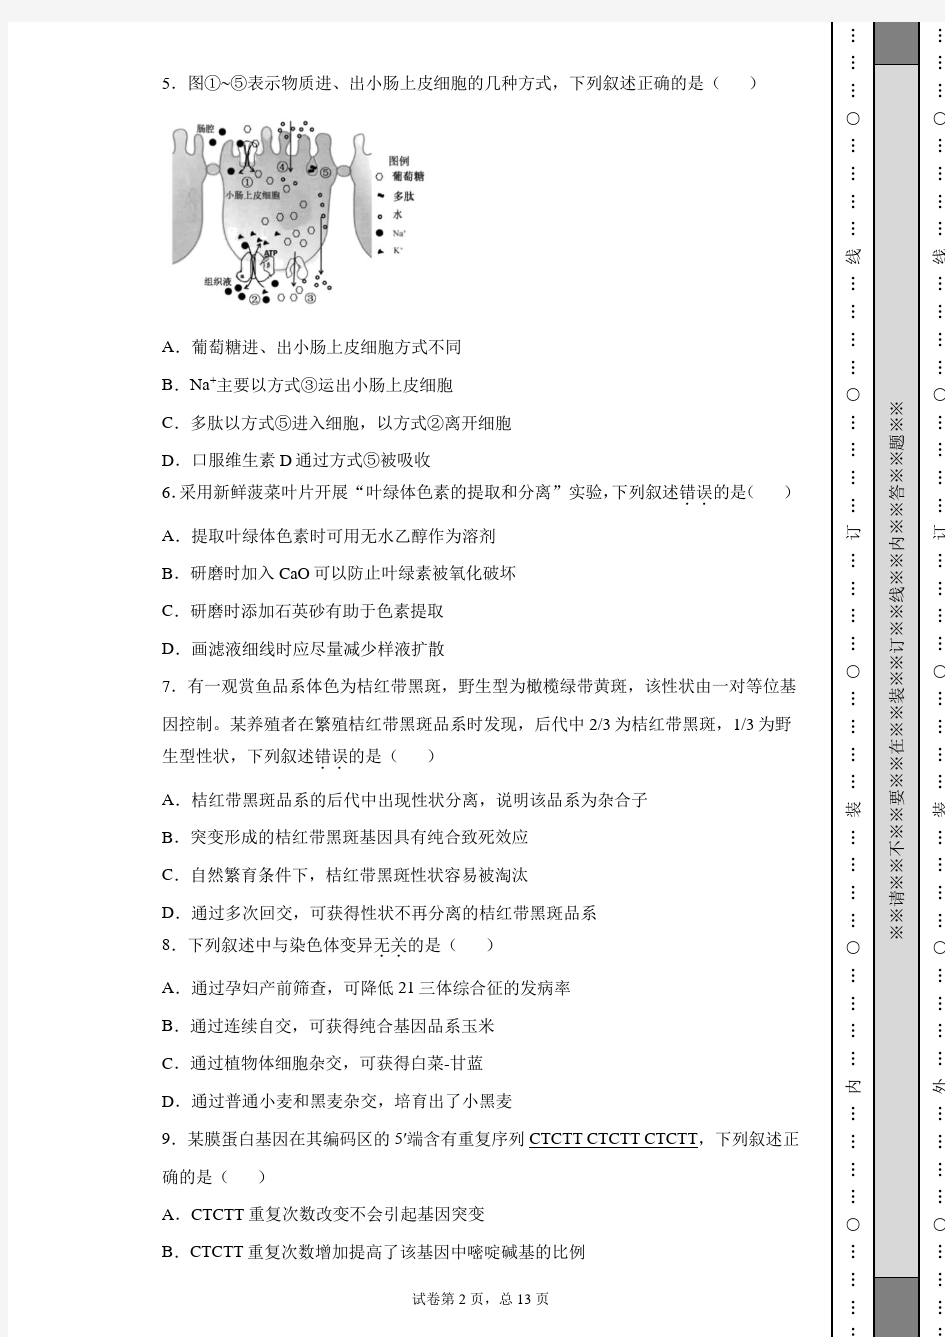 2020年江苏省高考生物试卷(含详细解析)